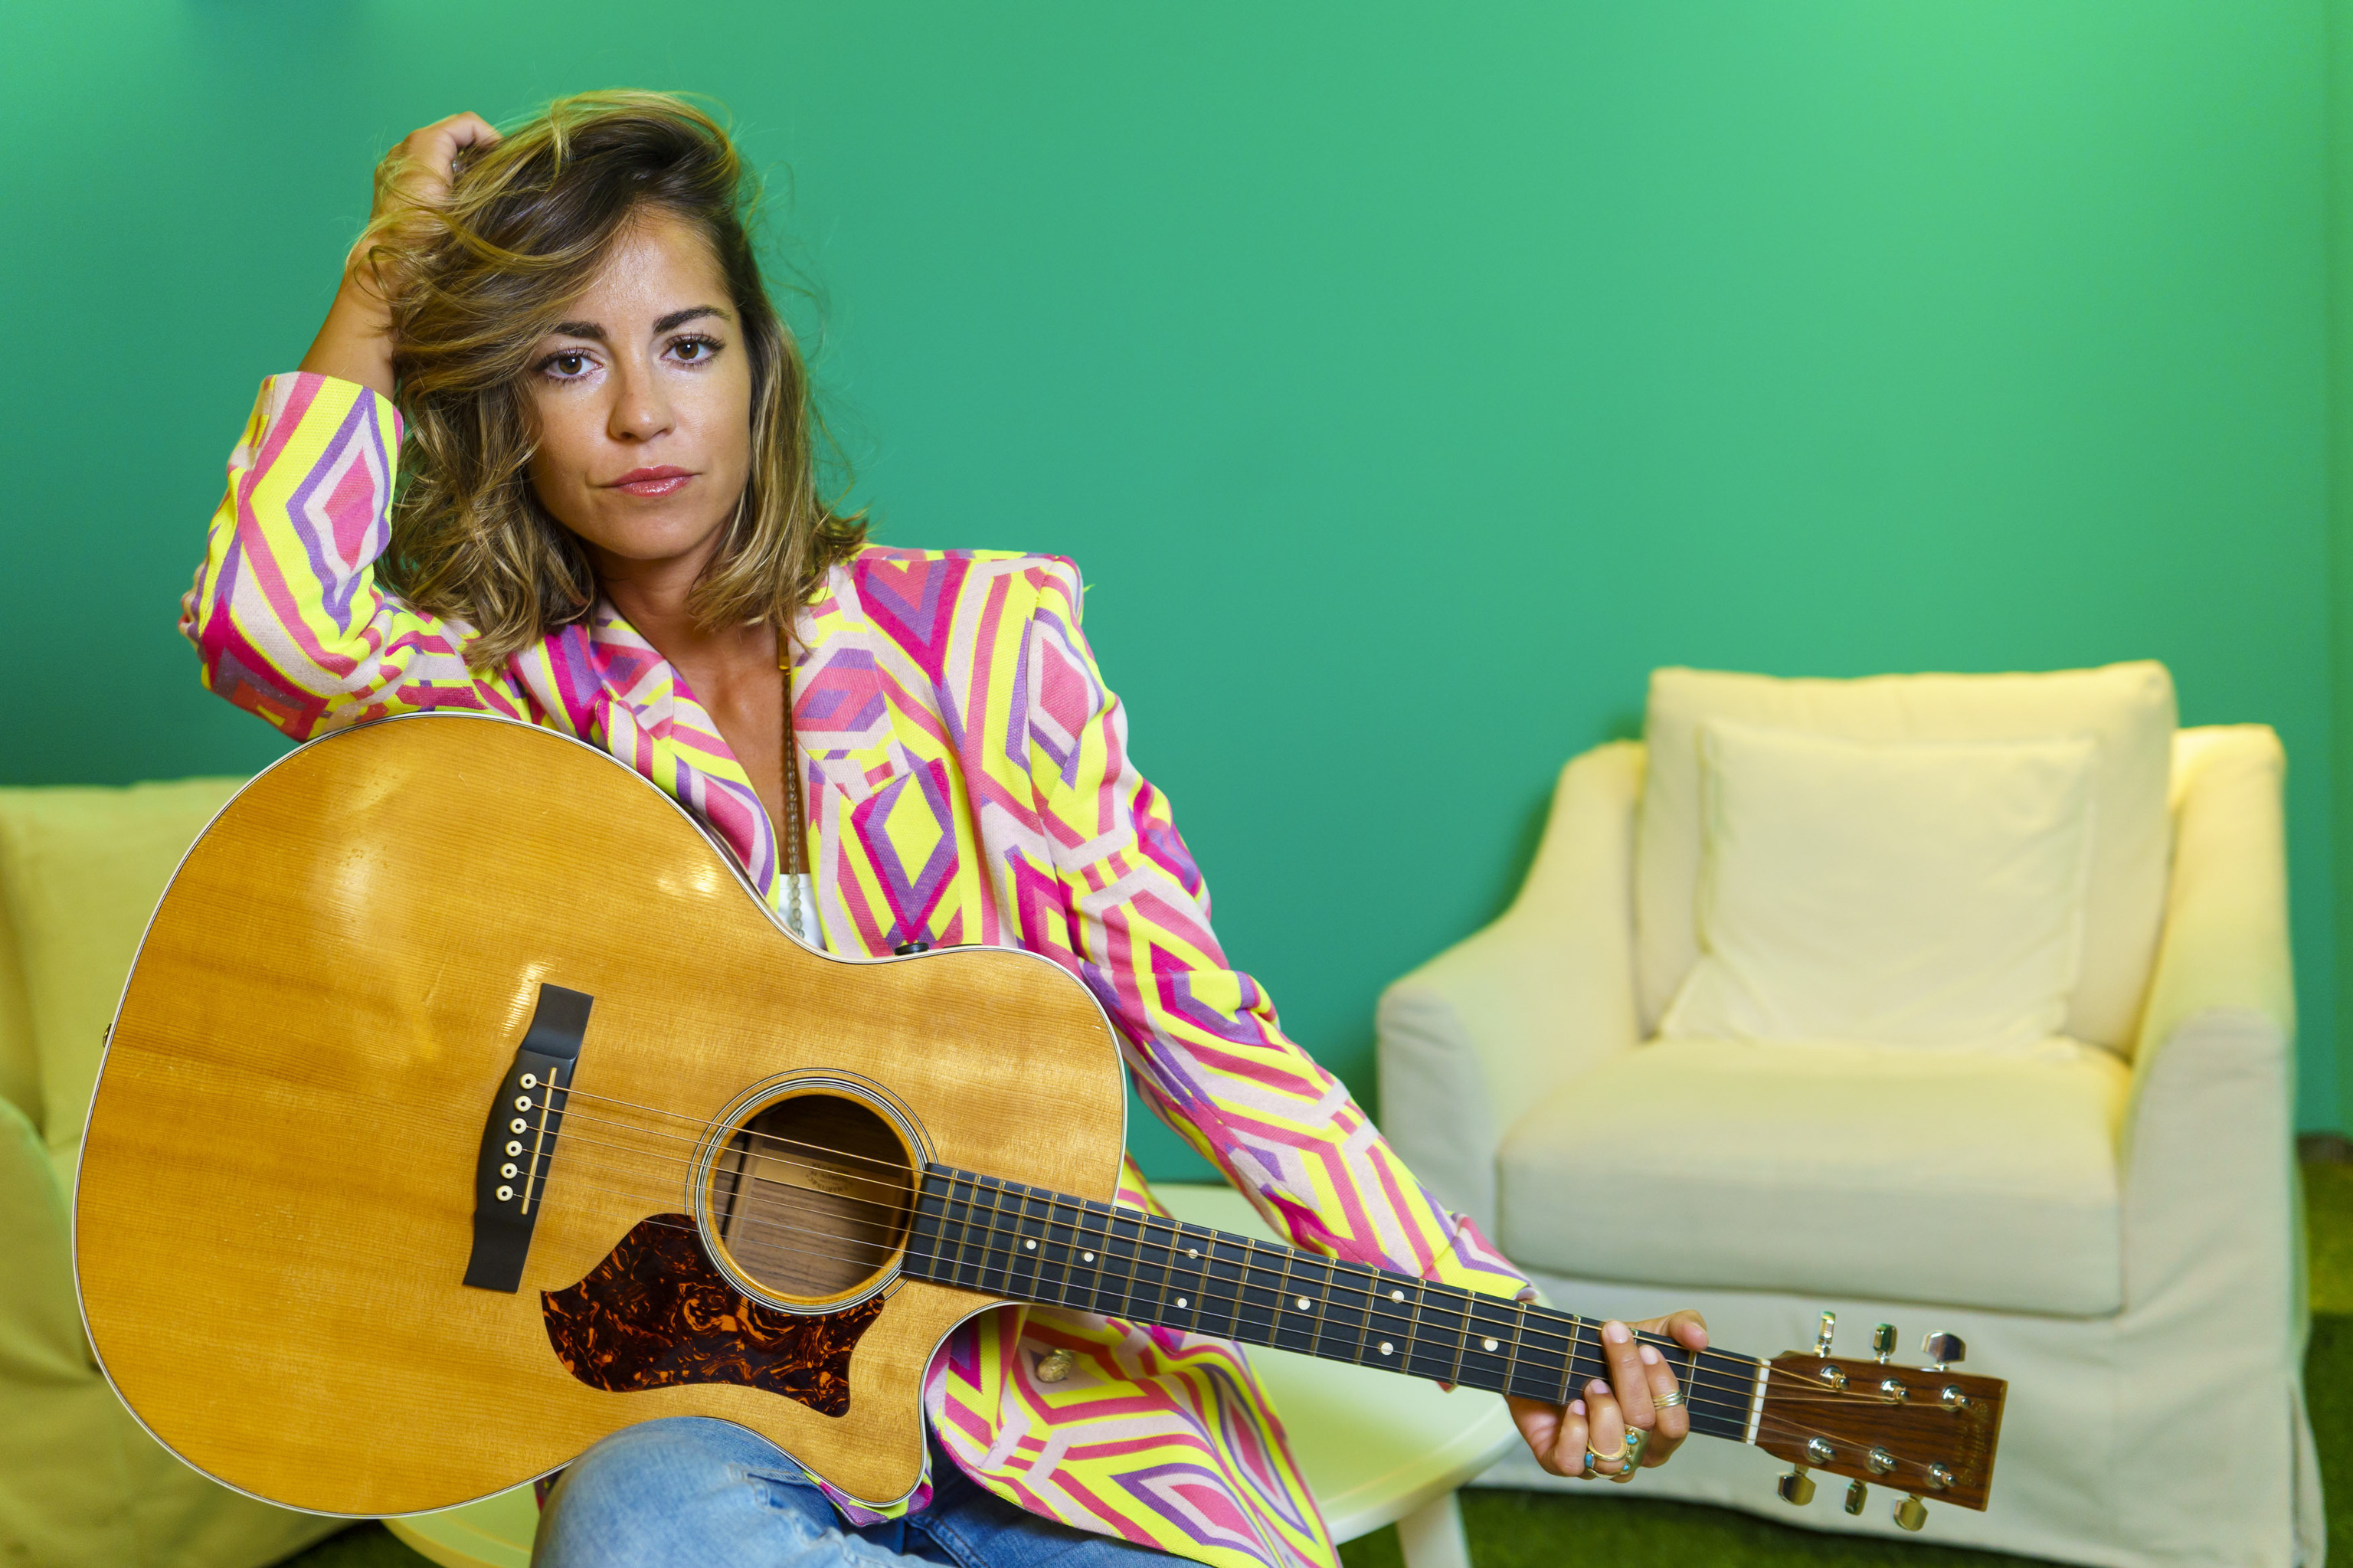 La artista, de 29 aos, posa con su inseparable guitarra y una colorida americana de rombos.